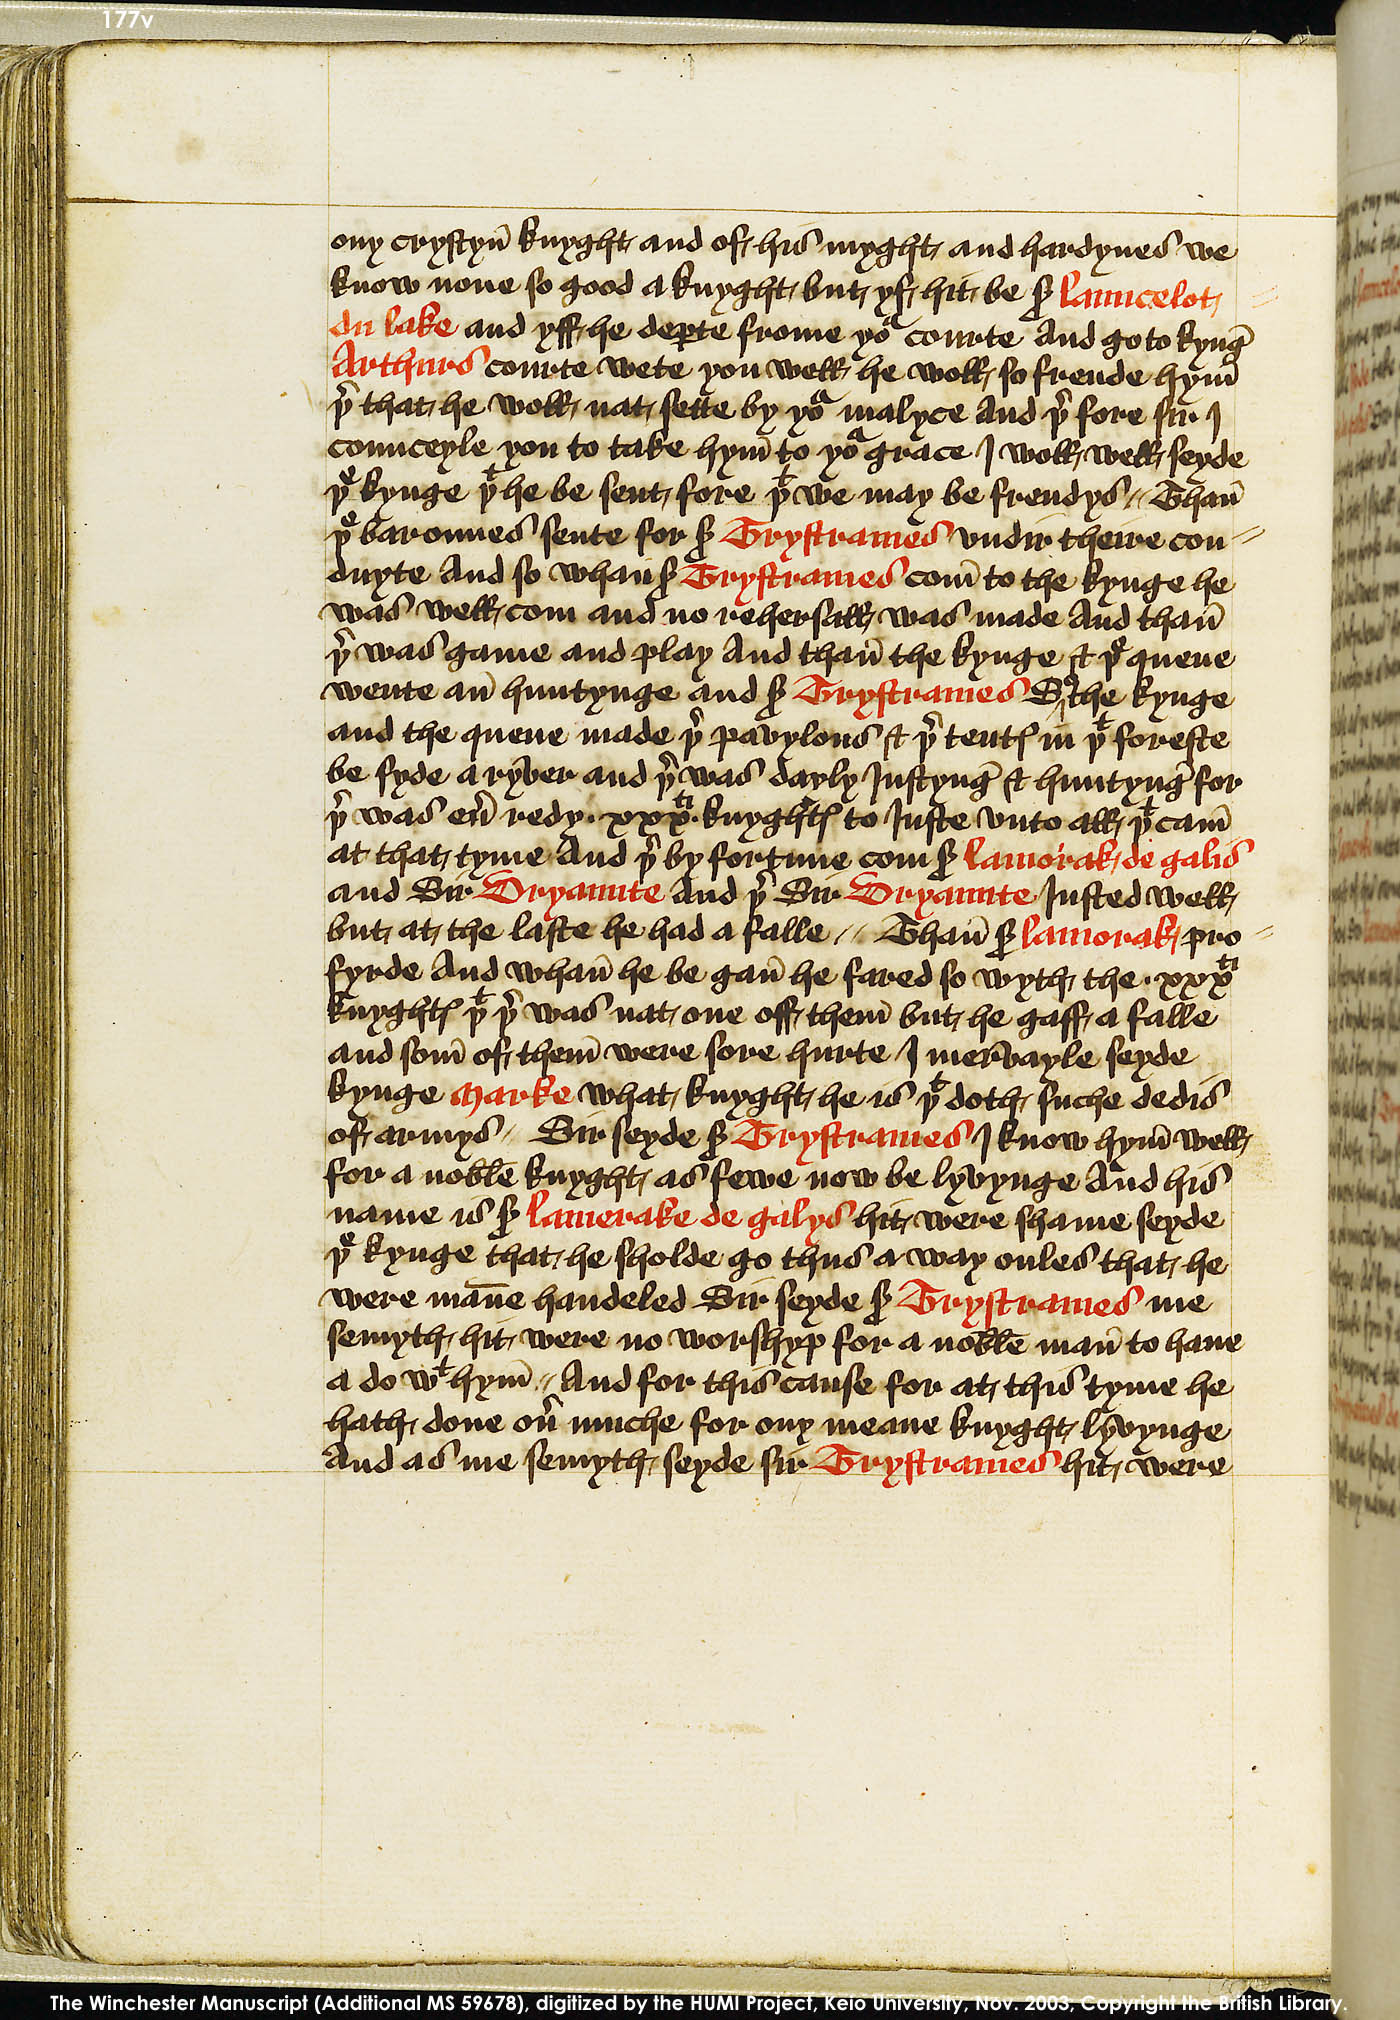 Folio 177v